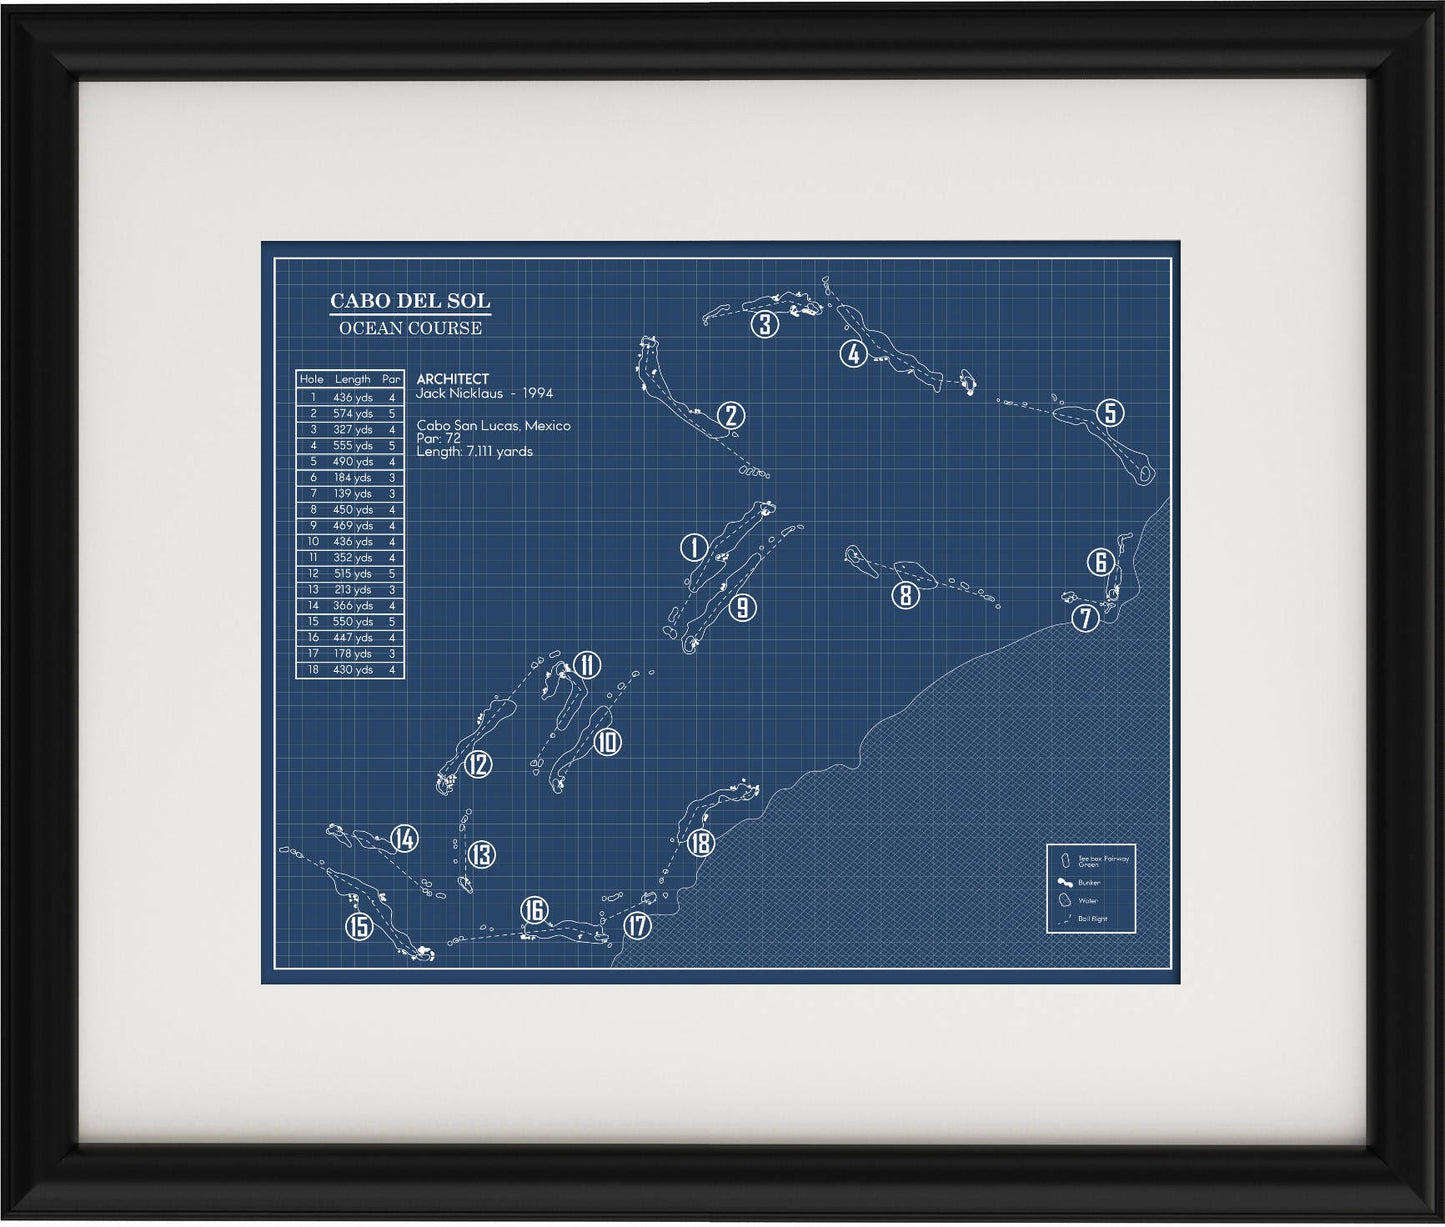 Cabo del sol Ocean Course Blueprint (Print)